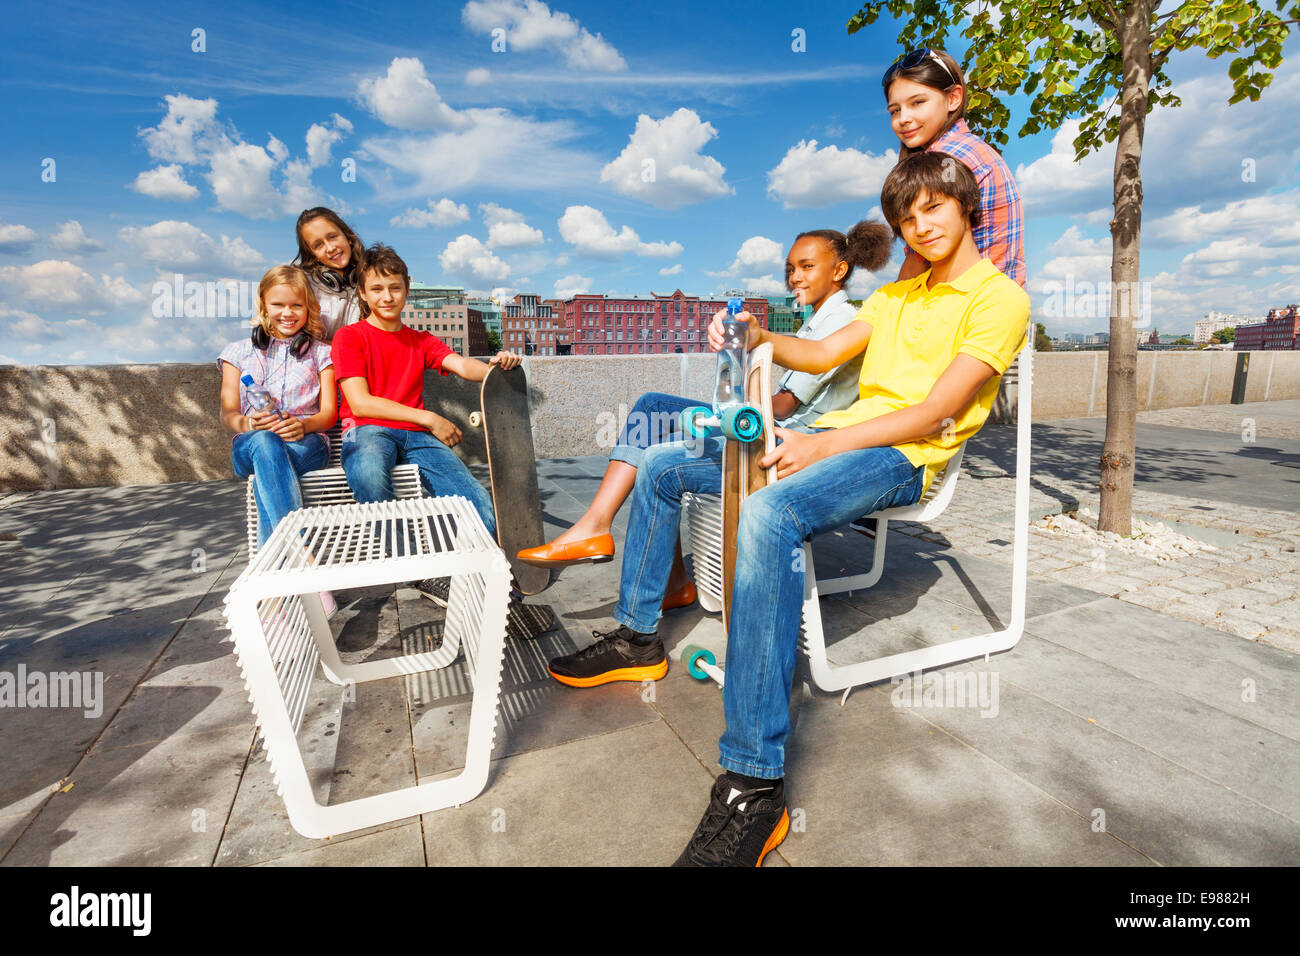 Les enfants positifs s'asseoir sur des chaises blanches avec des planches à roulettes Banque D'Images